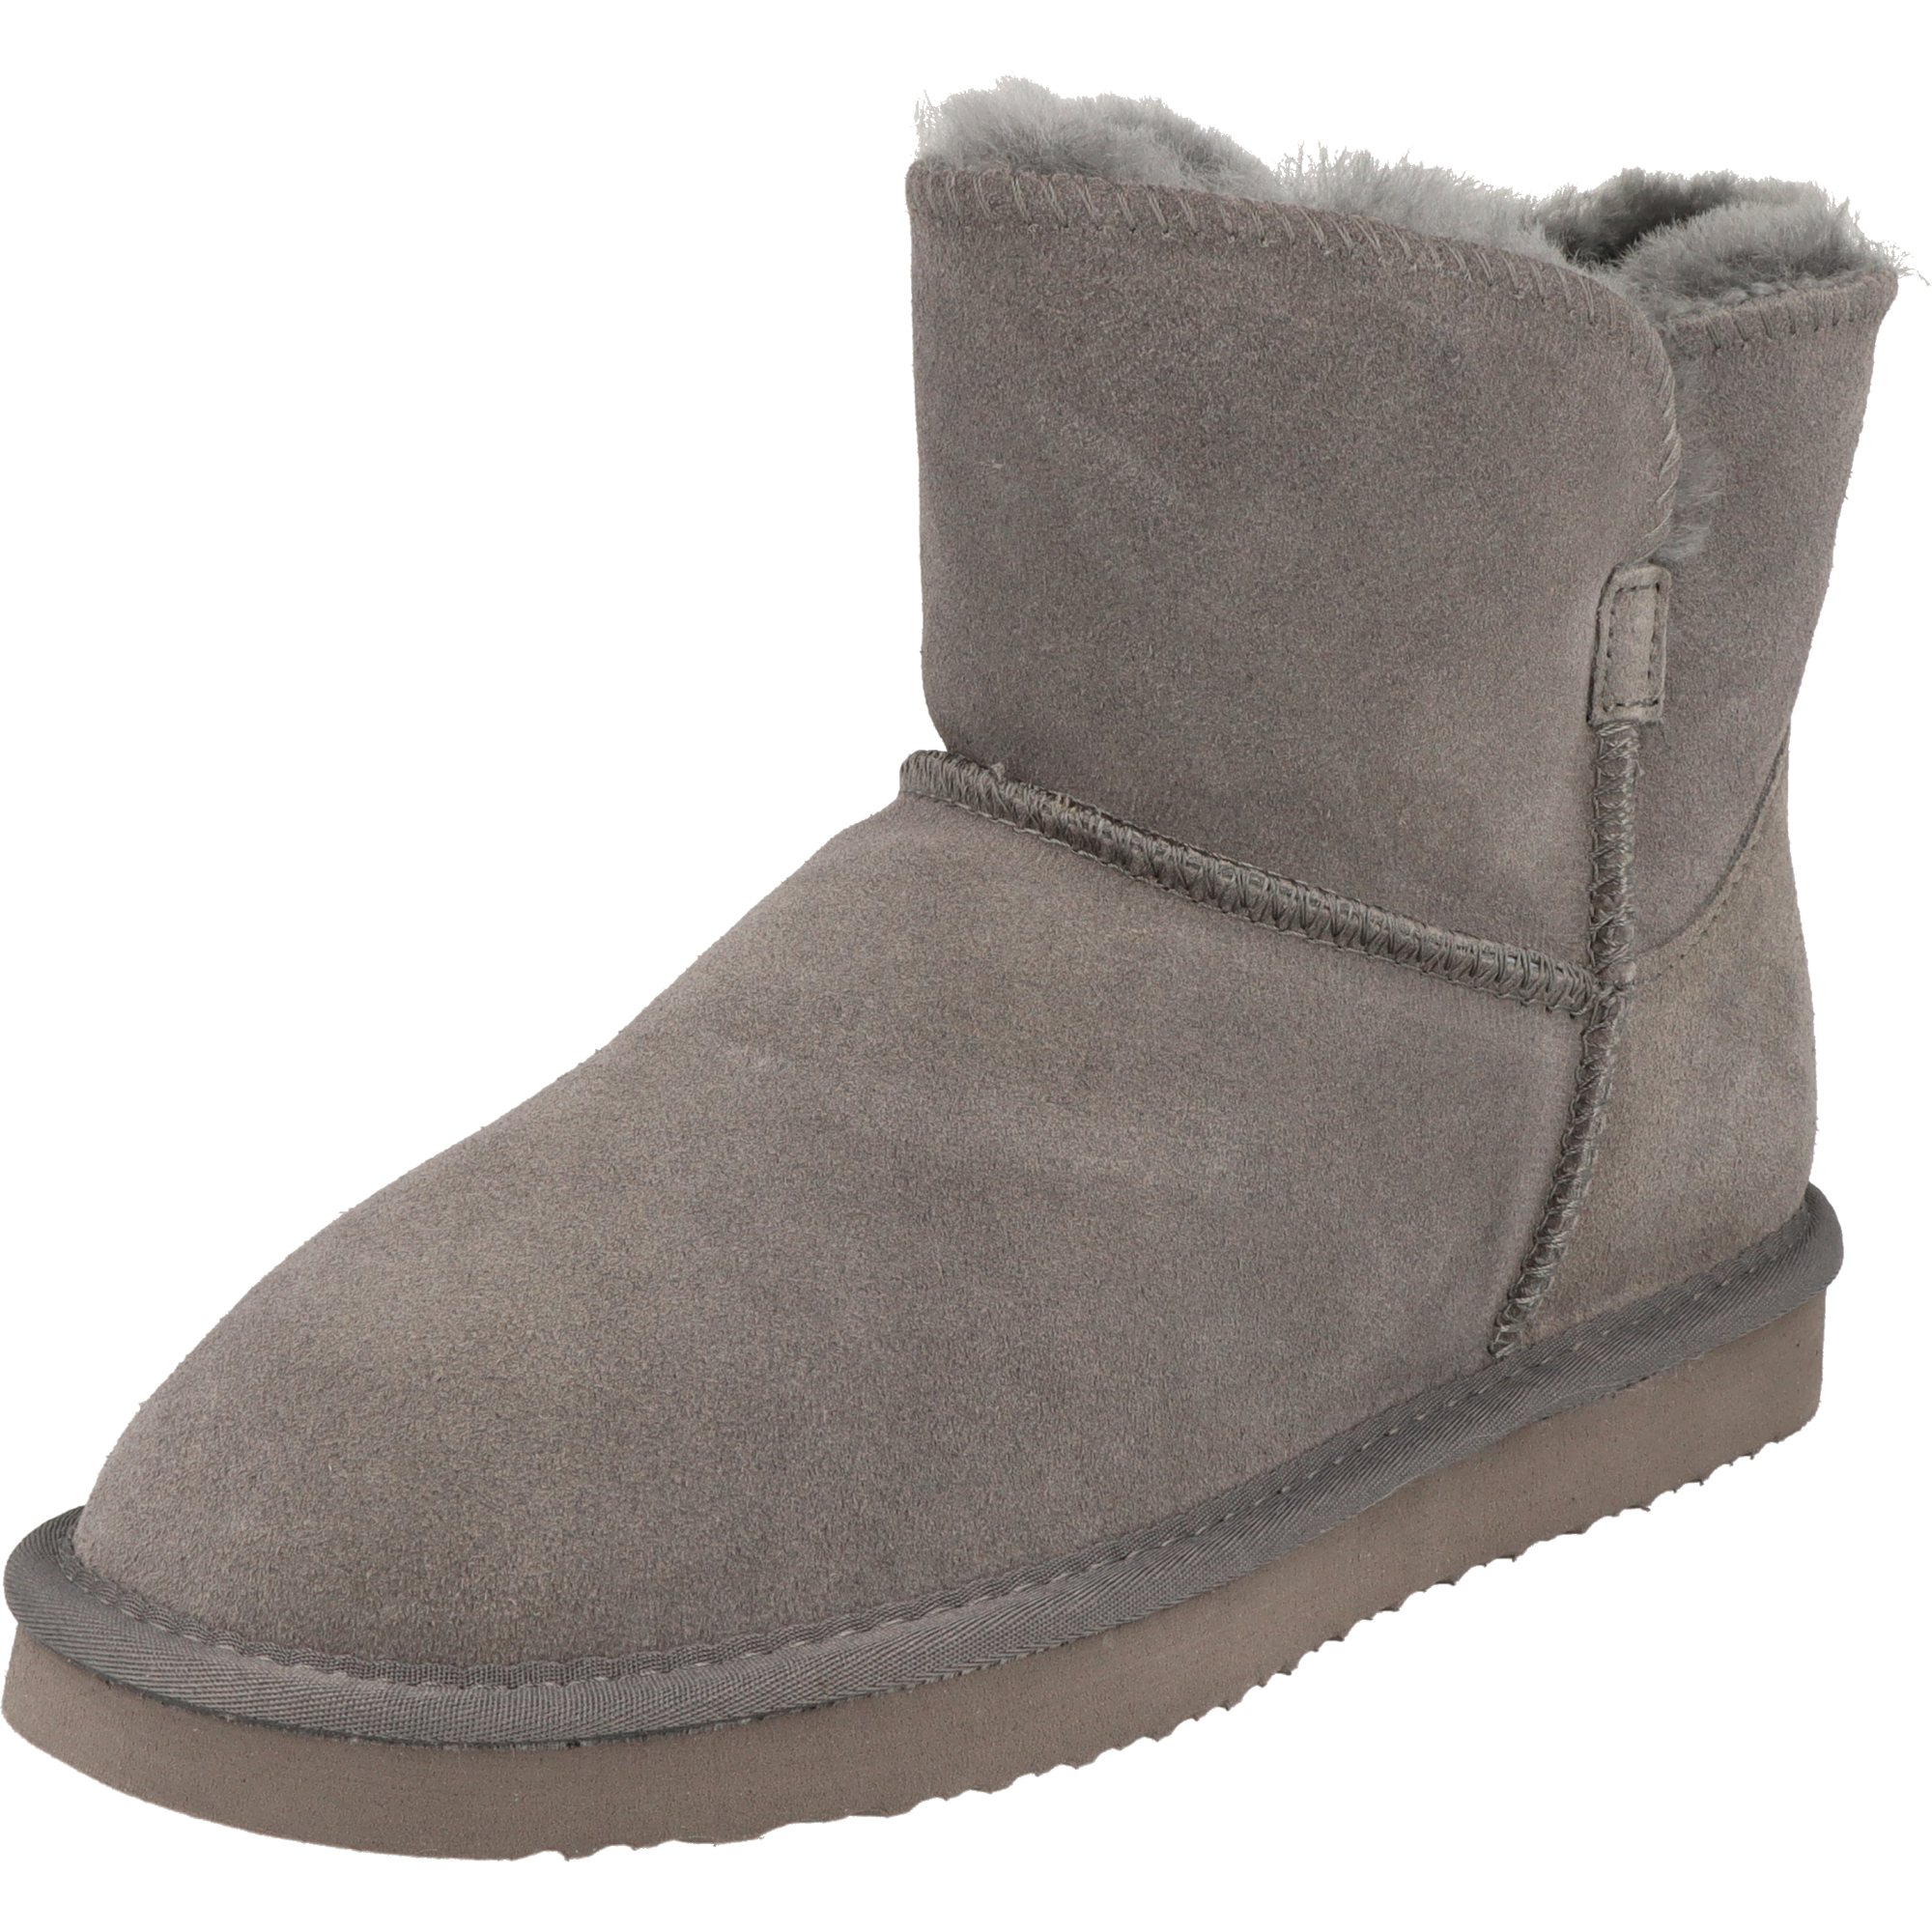 Piece Of Mind Damen Schuhe Winter Mid-Cut Leder Boots 264-695 gefüttert Dk.Grey